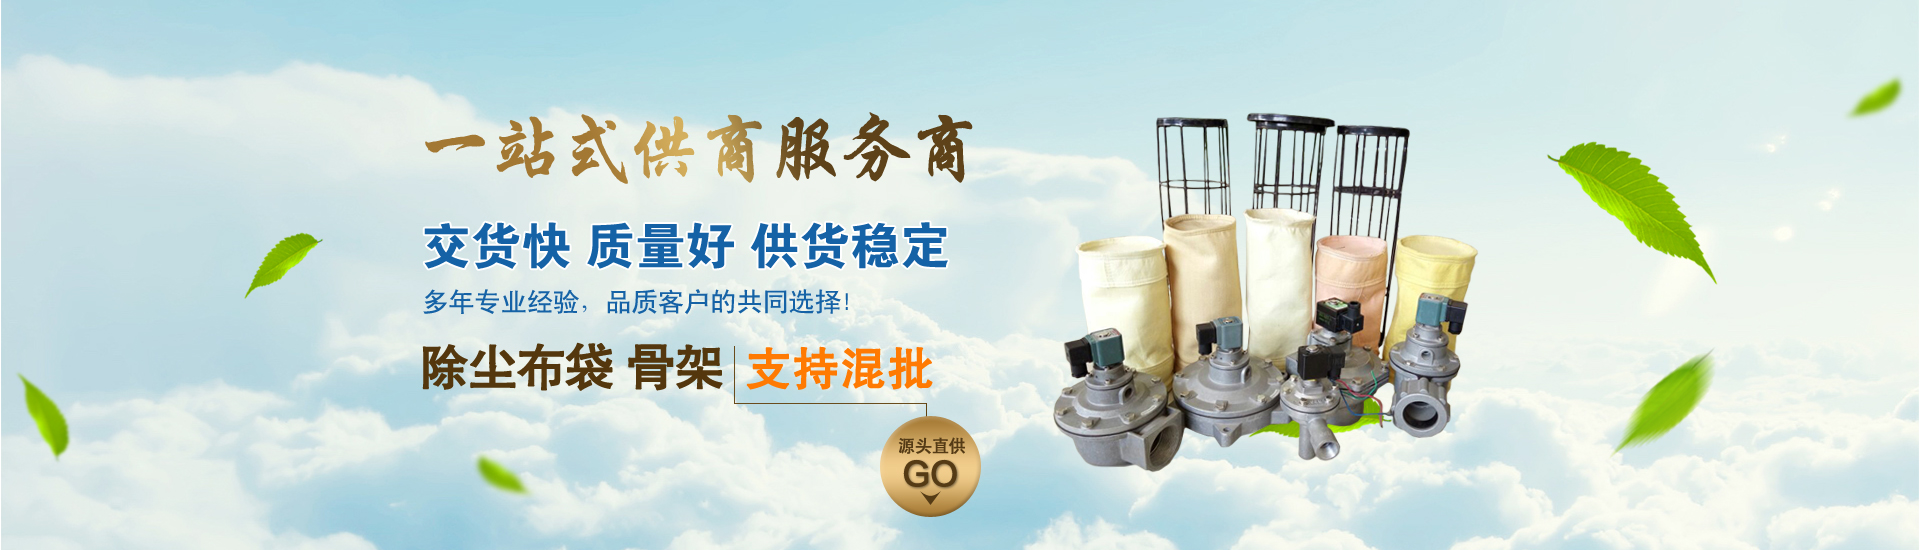 【单机除尘器】、上海本地【单机除尘器】、上海、上海【单机除尘器】